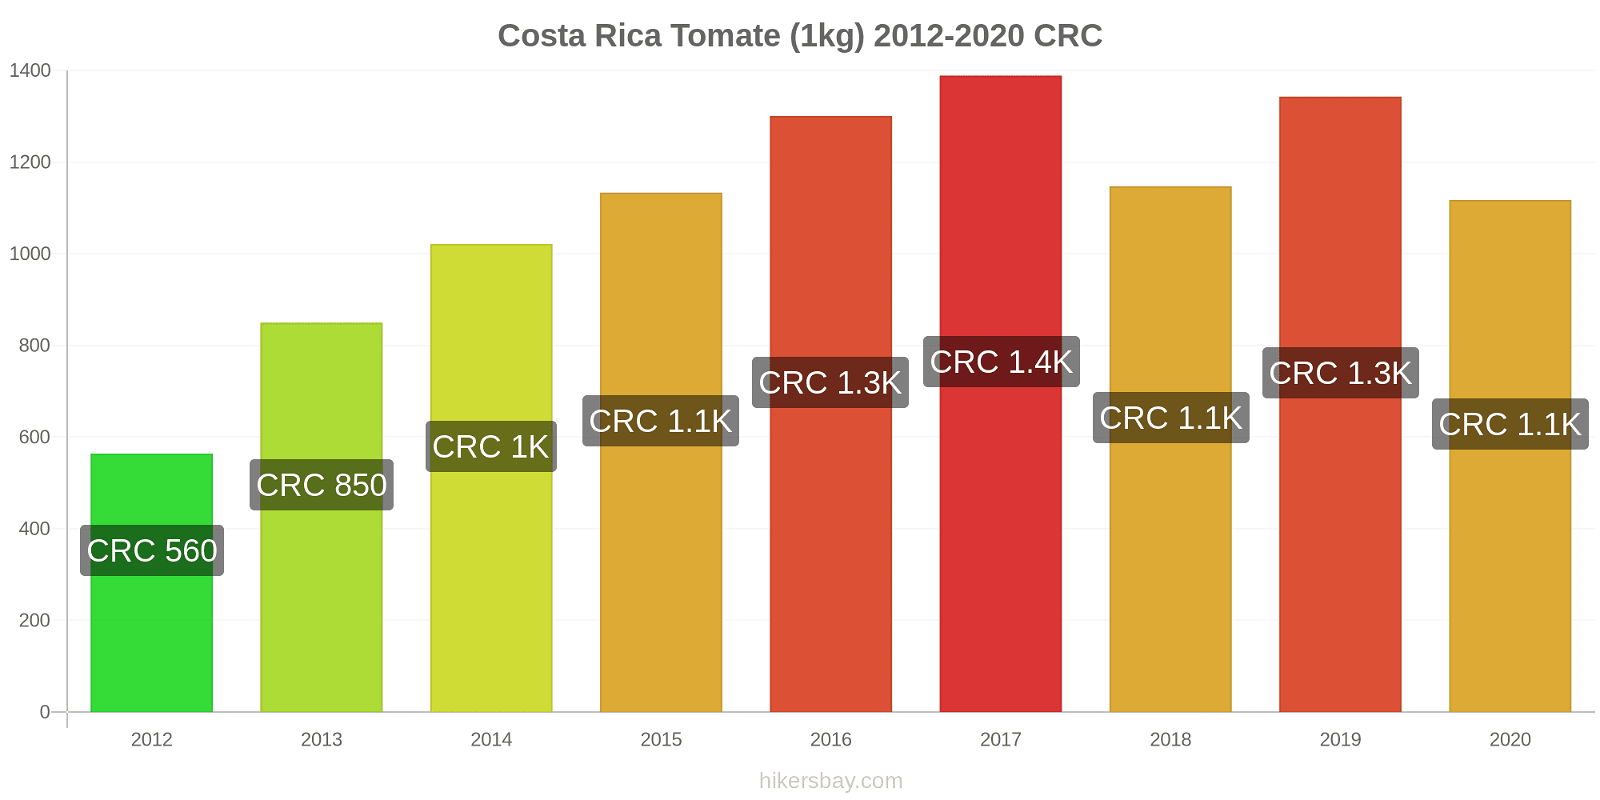 Costa Rica variação de preço Tomate (1kg) hikersbay.com